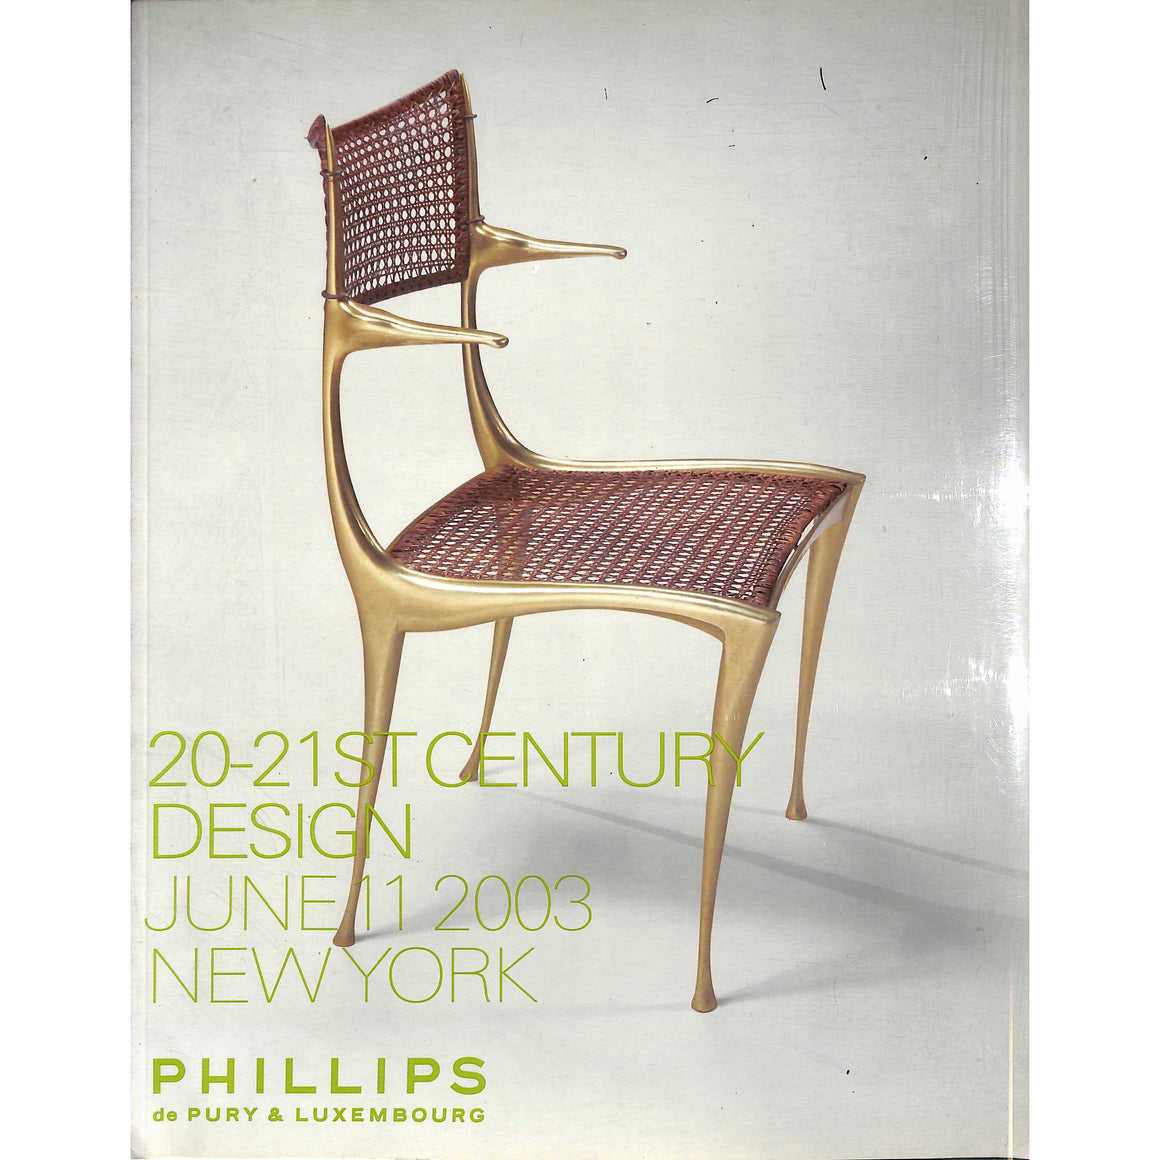 20-21st Century Design: June 11, 2003